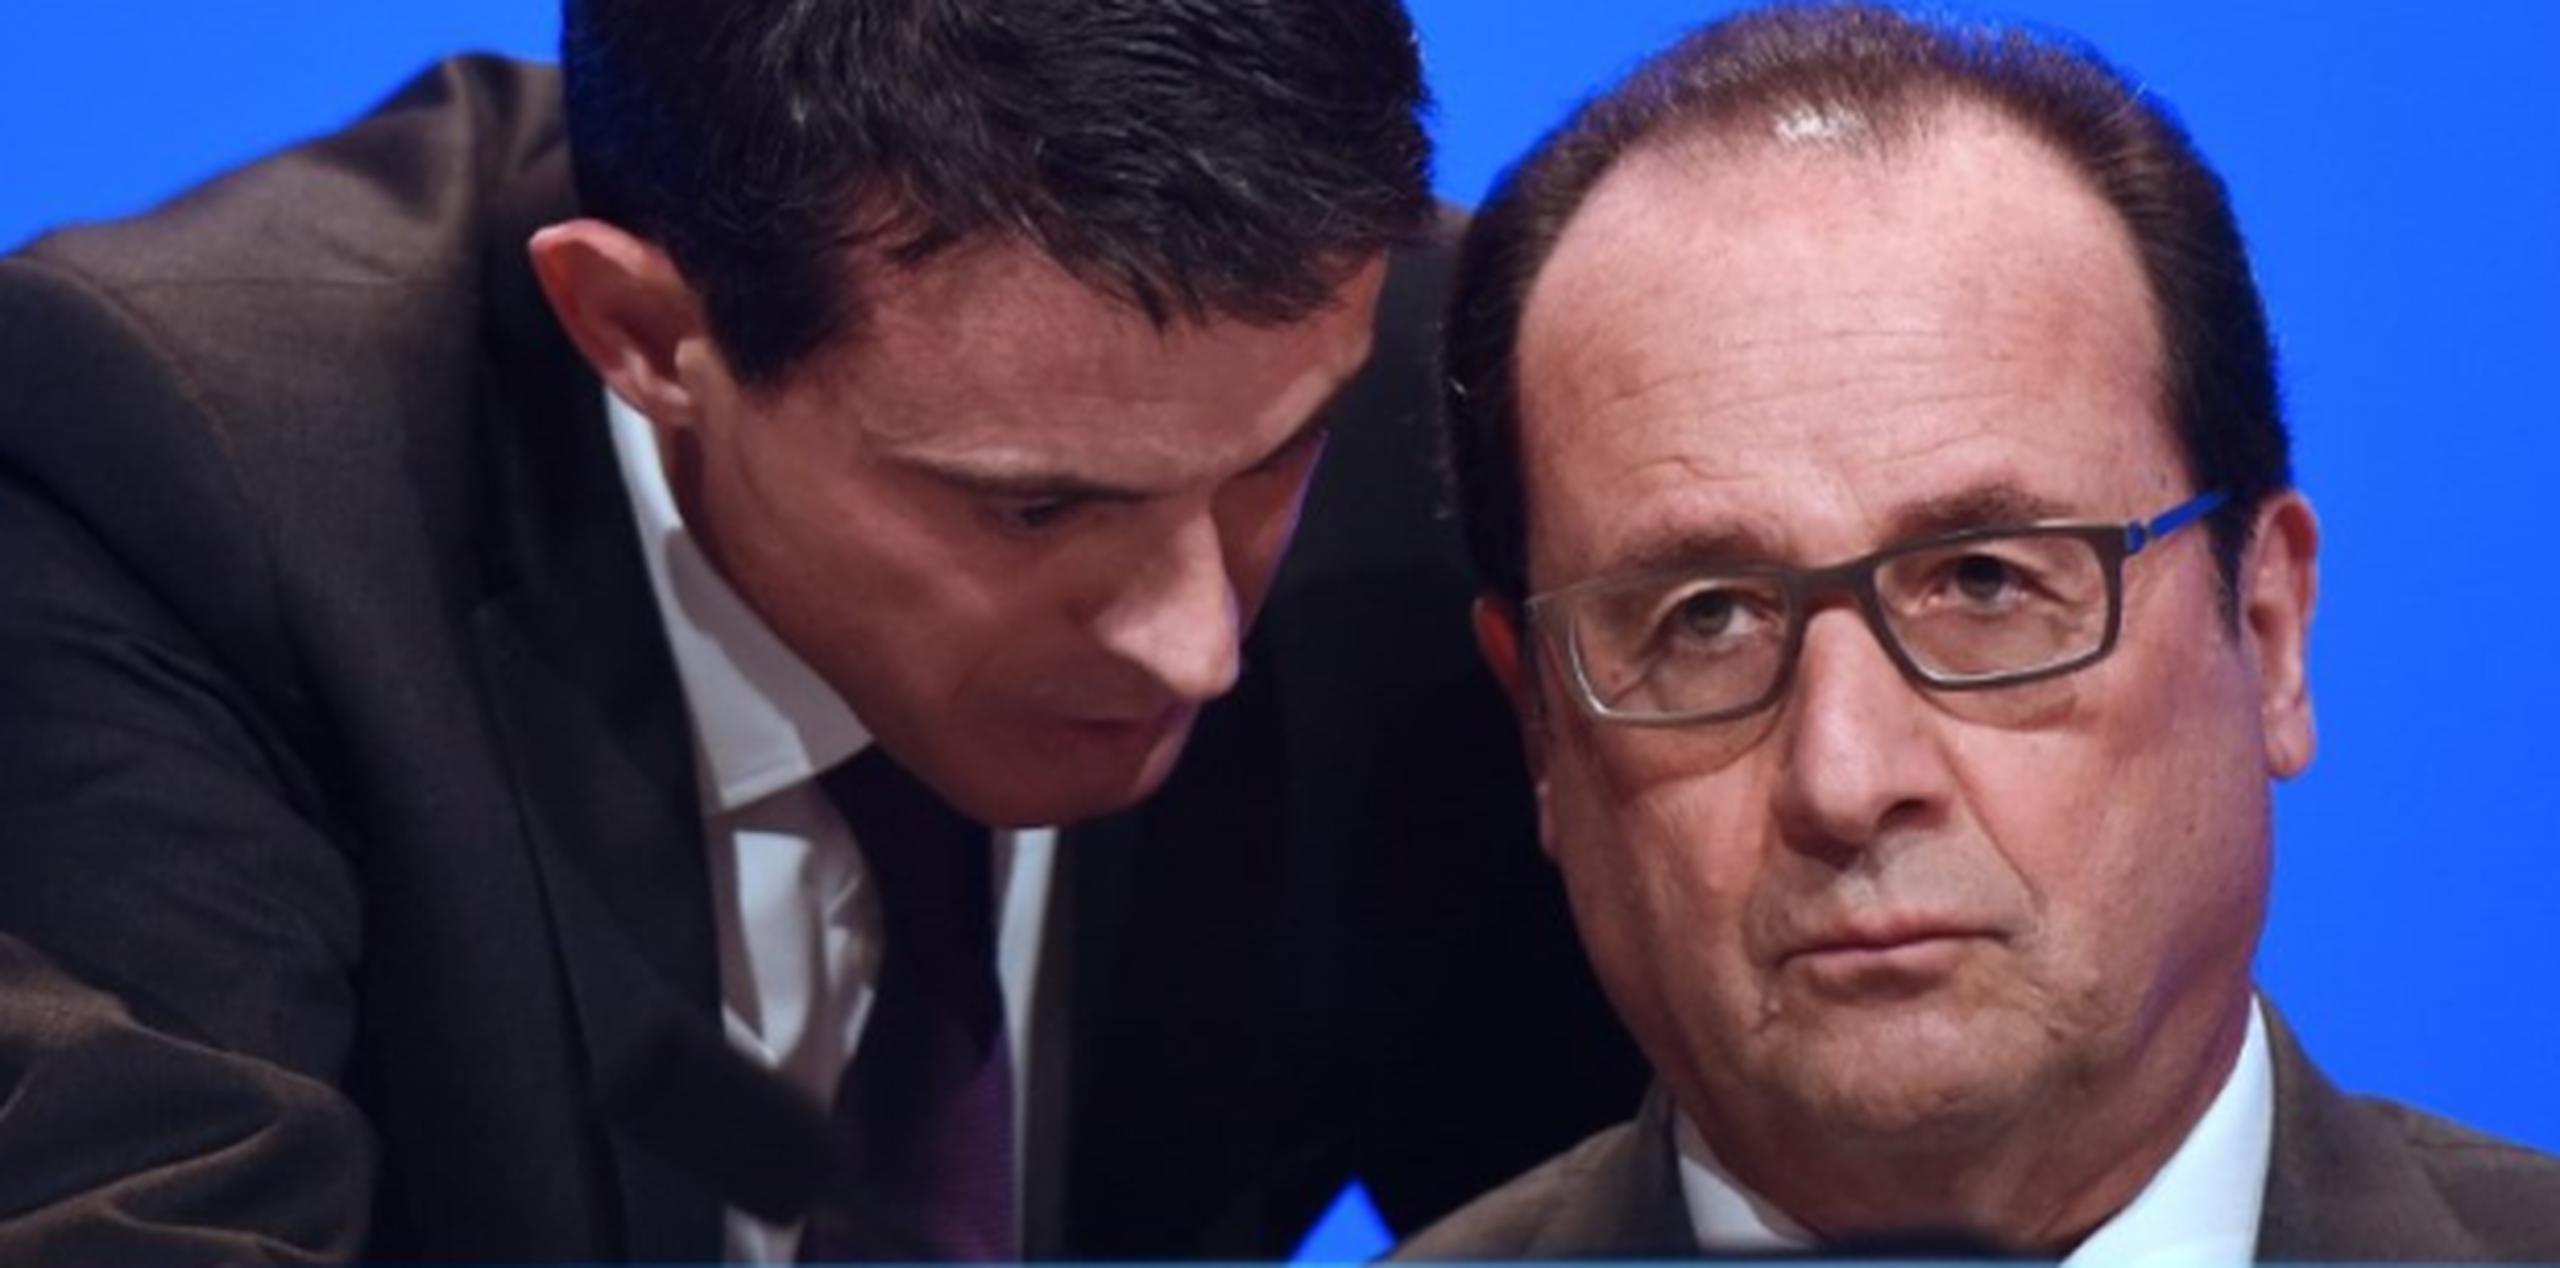 François Hollande reconoció que habrá "ciertas restricciones temporales de las libertades", pero con el fin de "restablecerlas plenamente". (AFP)